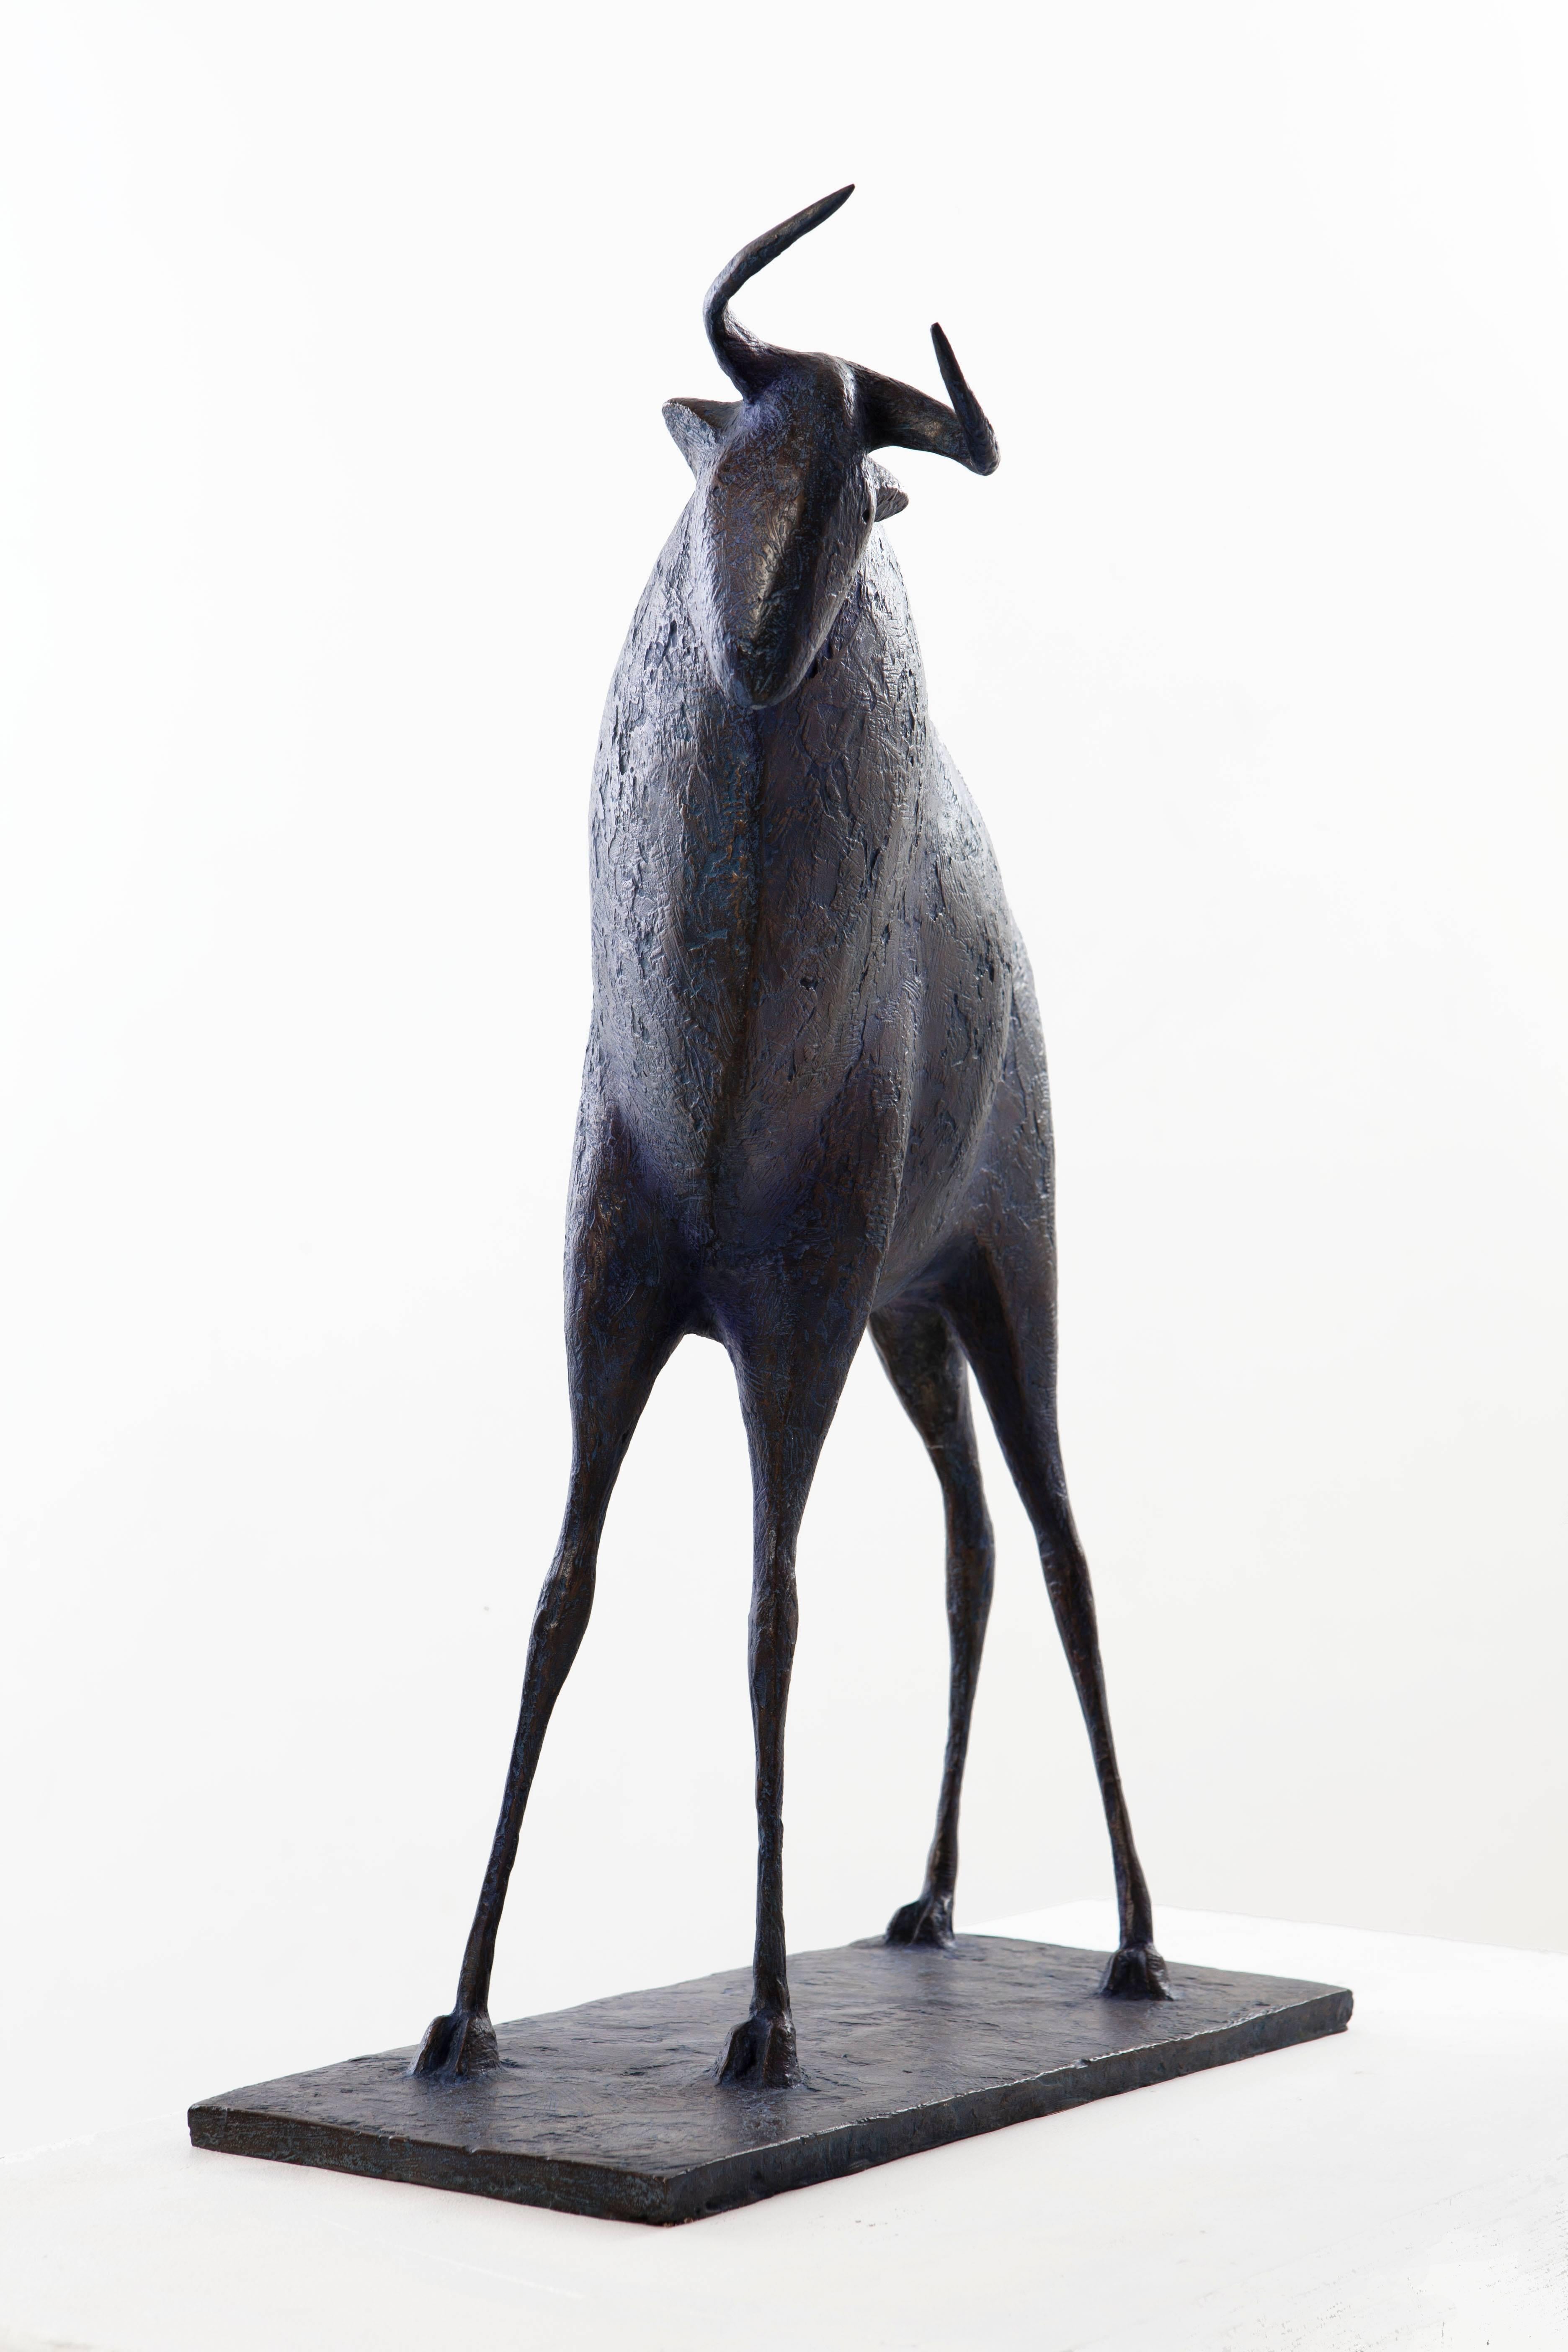 Bull IV (Taureau IV) by French contemporary artist Pierre Yermia. Bronze sculpture, 70 cm × 61 cm × 20 cm.
Signés et numérotés. Limited edition of 8 copies and 4 artist's proofs.
